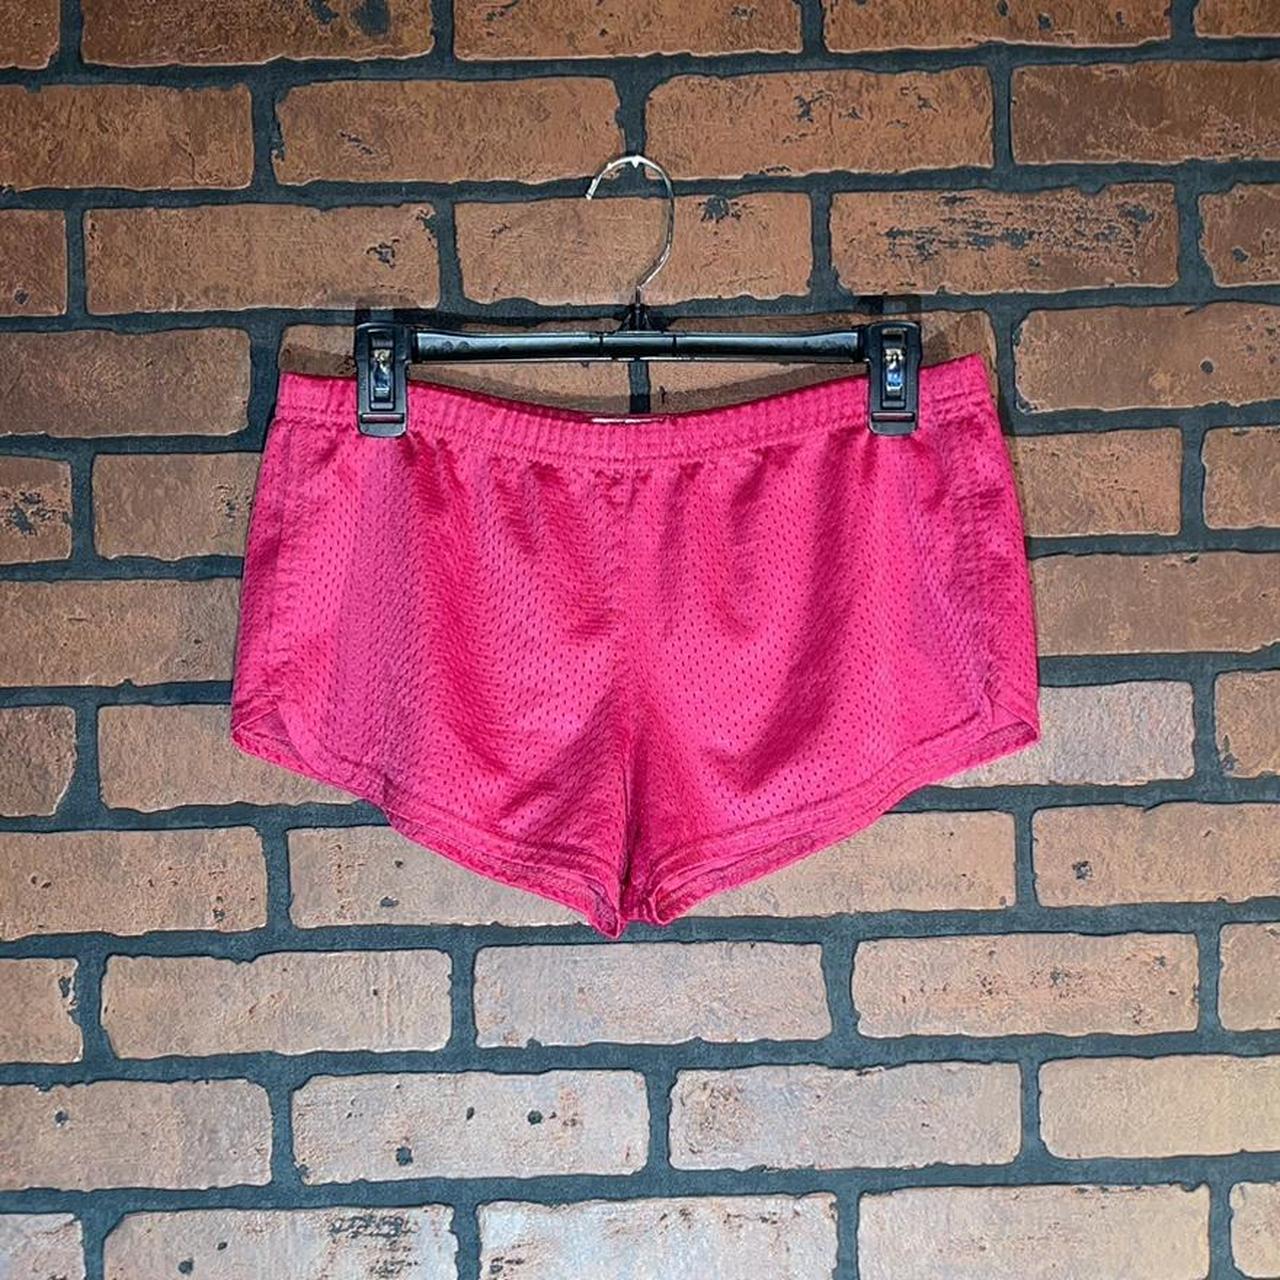 Medium Women’s Soffe Pink Short Shorts #pink #soffe... - Depop